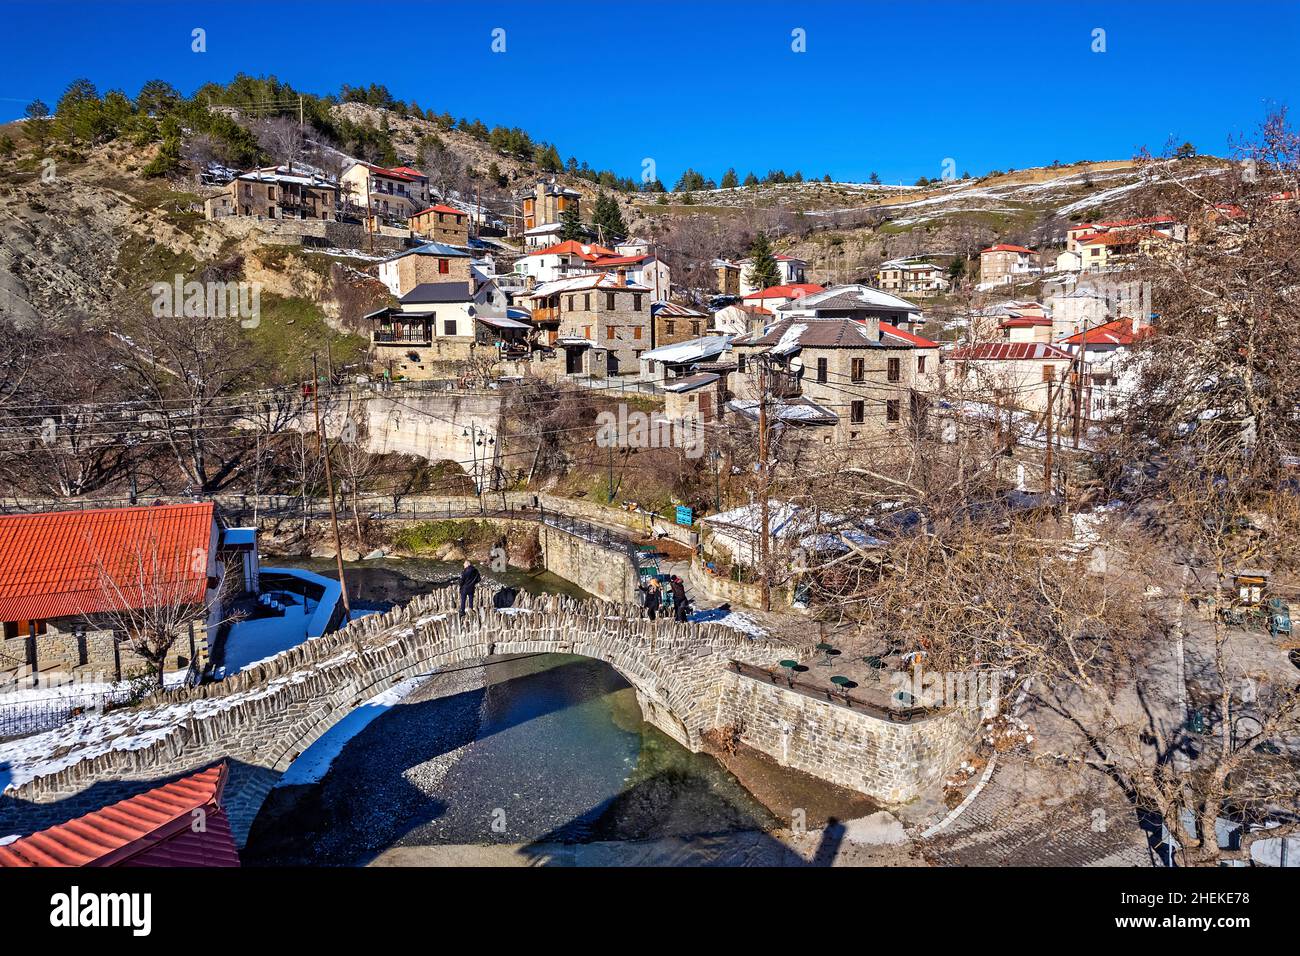 Dotsiko villaggio e il suo vecchio ponte ad arco in pietra (1804), Grevena, Macedonia occidentale, Grecia. Foto Stock